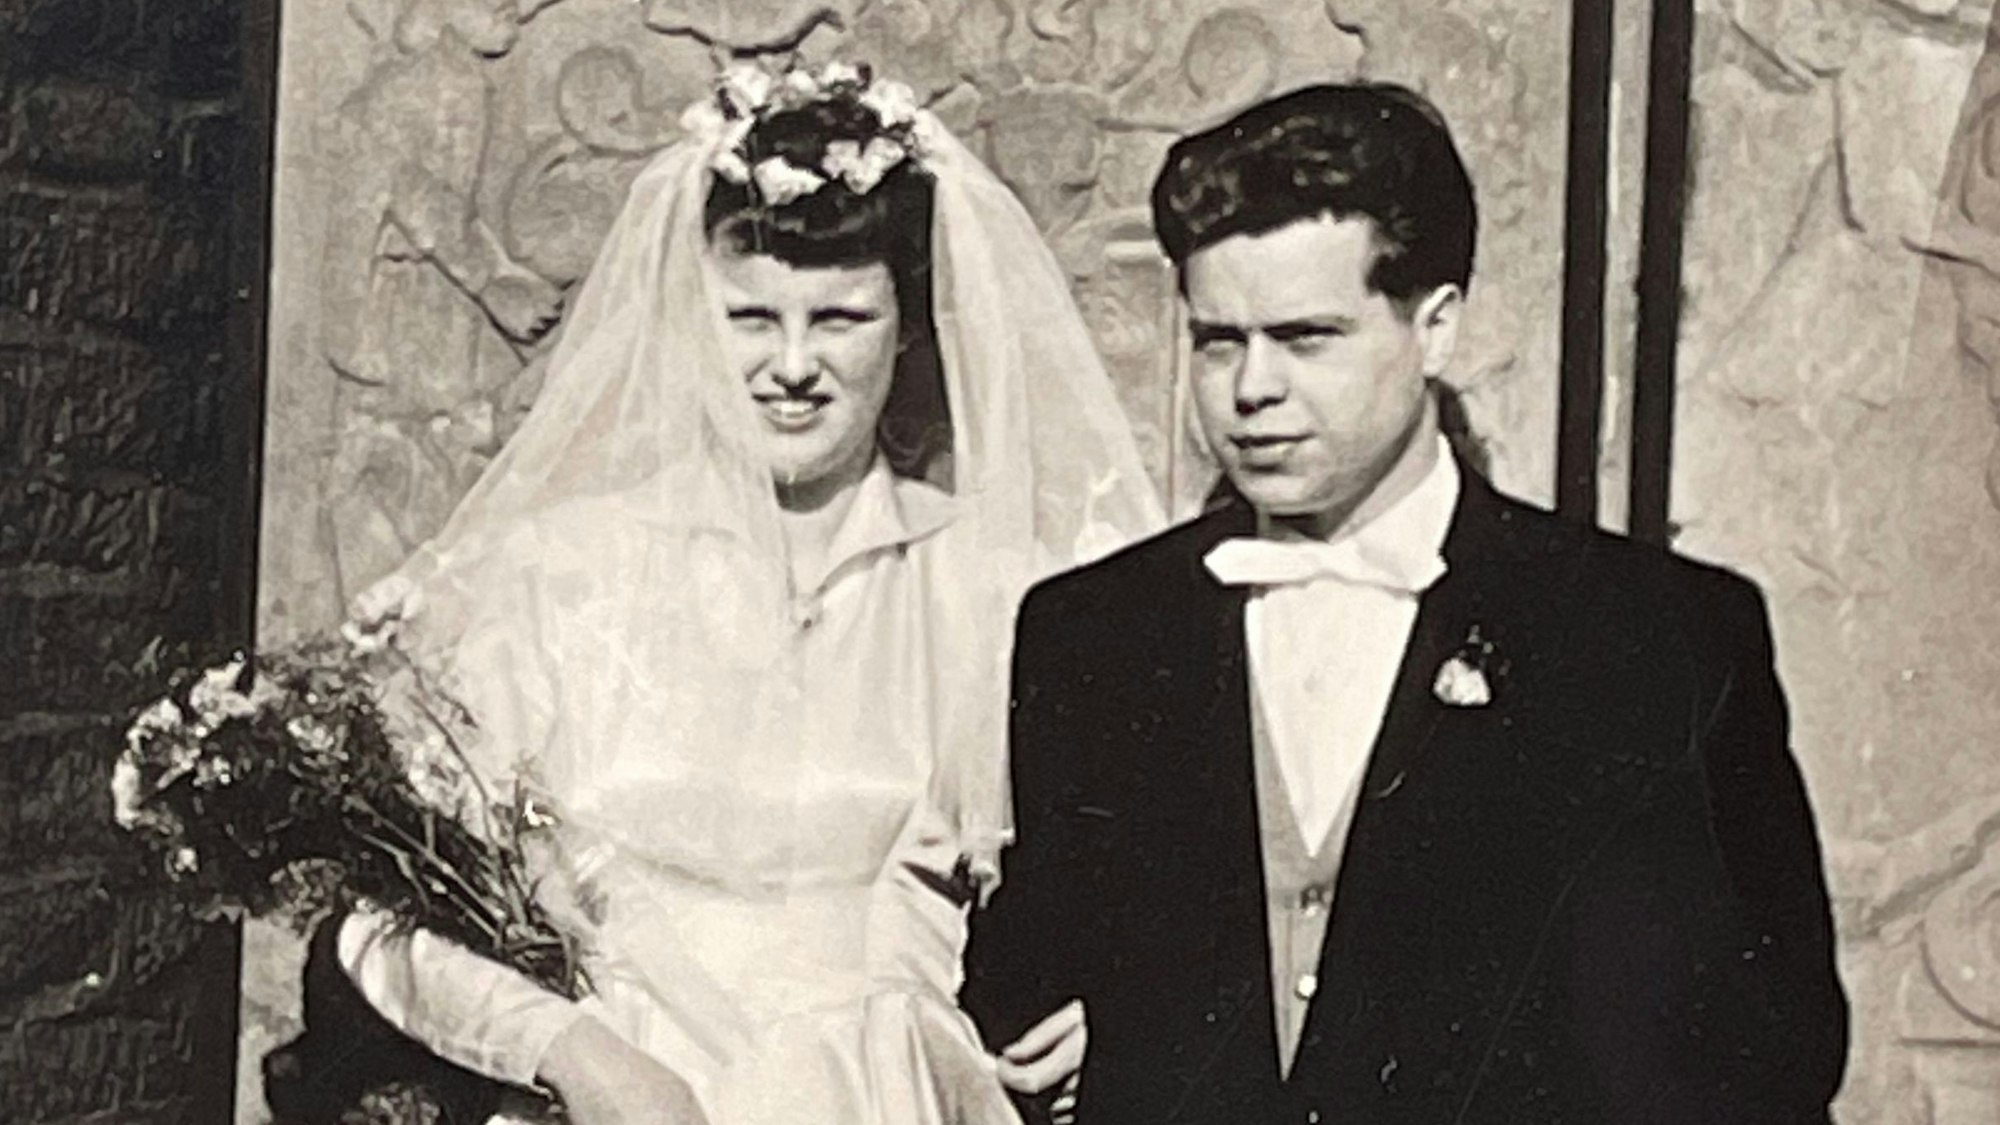 Am 10. März 1959 haben Christel und Werner Stölitg kirchlich und auch standesamtlich geheiratet. Dies ist das Hochzeitsfoto von damals.